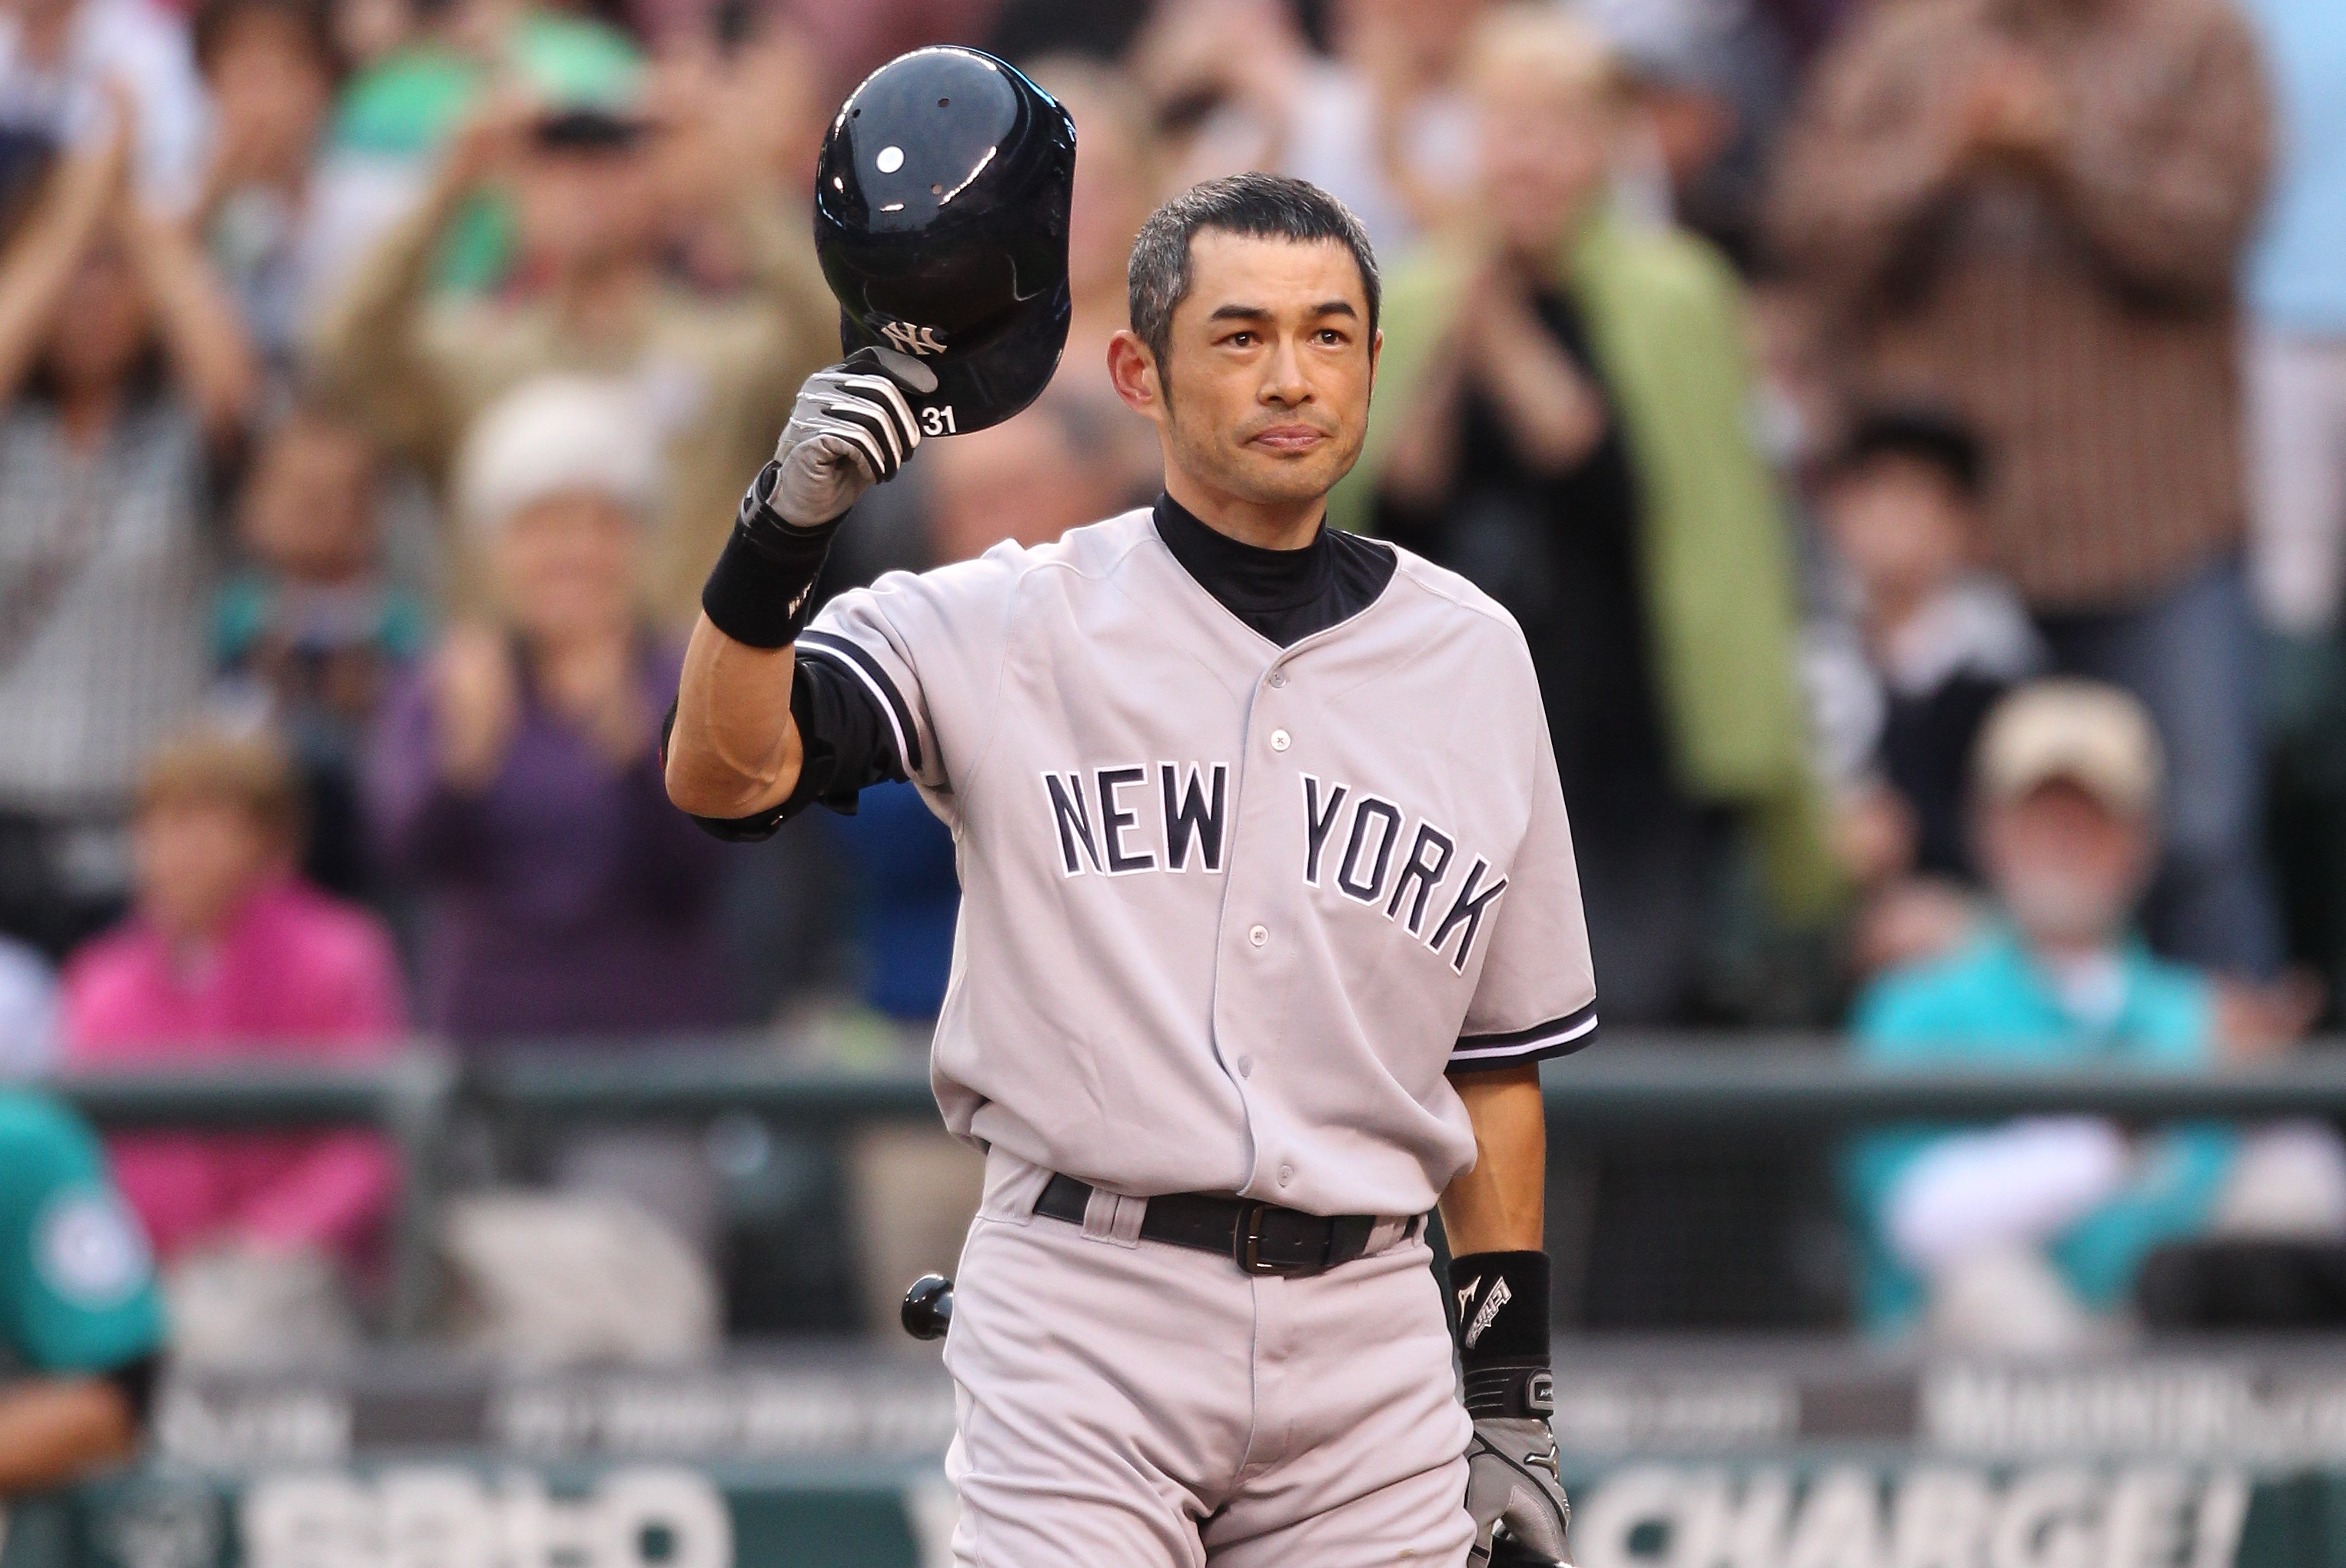 2013 Ichiro Suzuki Game Worn New York Yankees Jersey with Ichiro